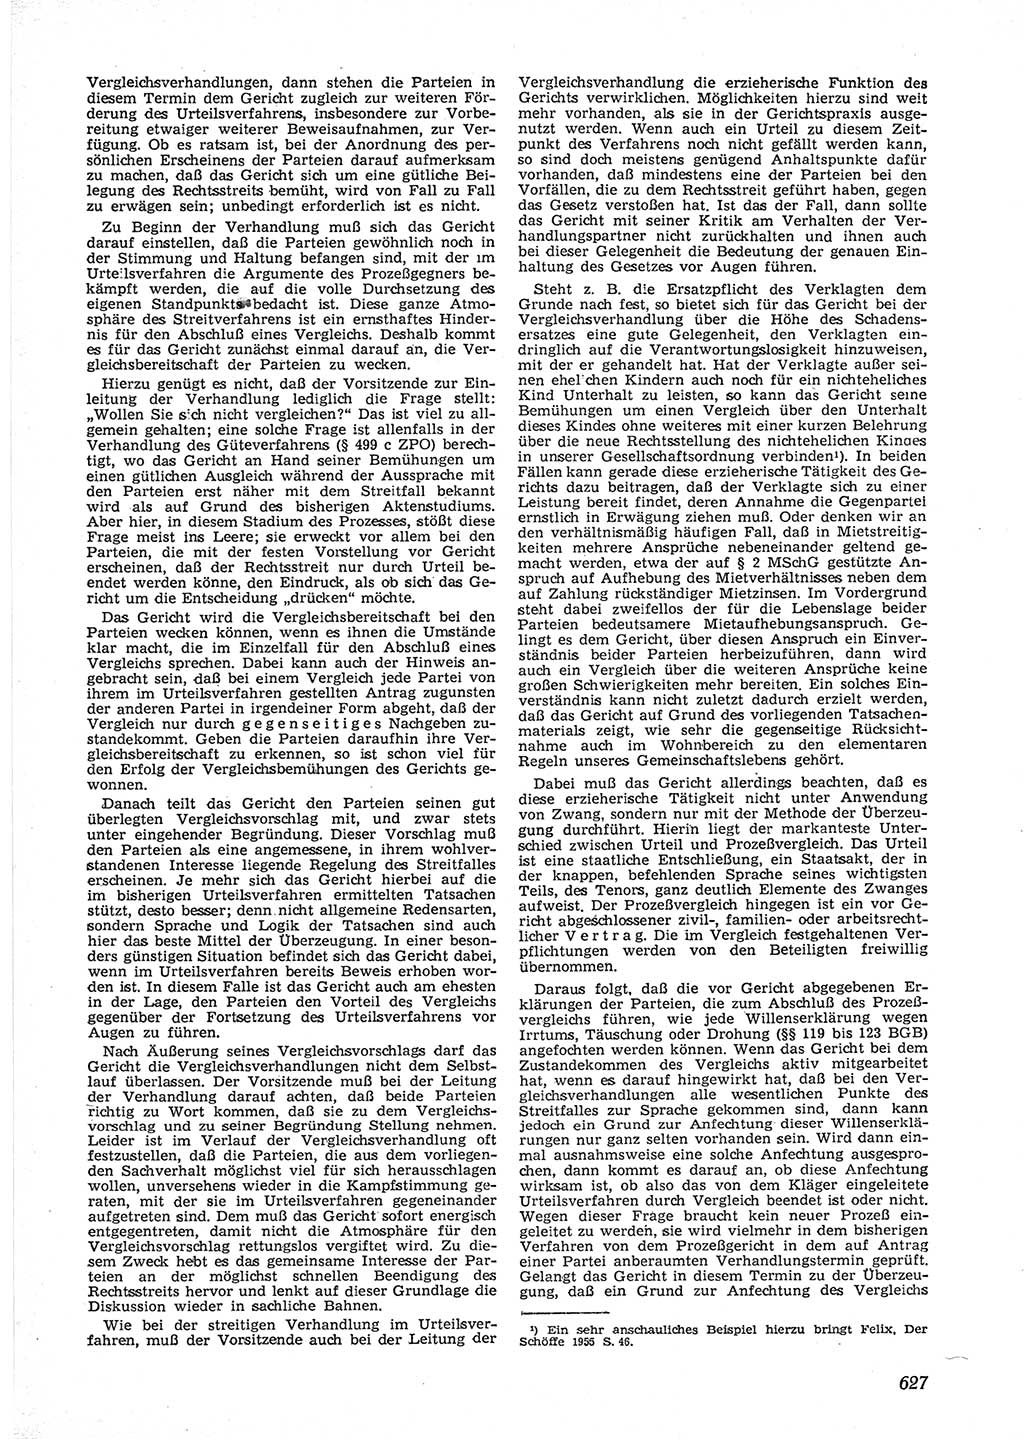 Neue Justiz (NJ), Zeitschrift für Recht und Rechtswissenschaft [Deutsche Demokratische Republik (DDR)], 9. Jahrgang 1955, Seite 627 (NJ DDR 1955, S. 627)